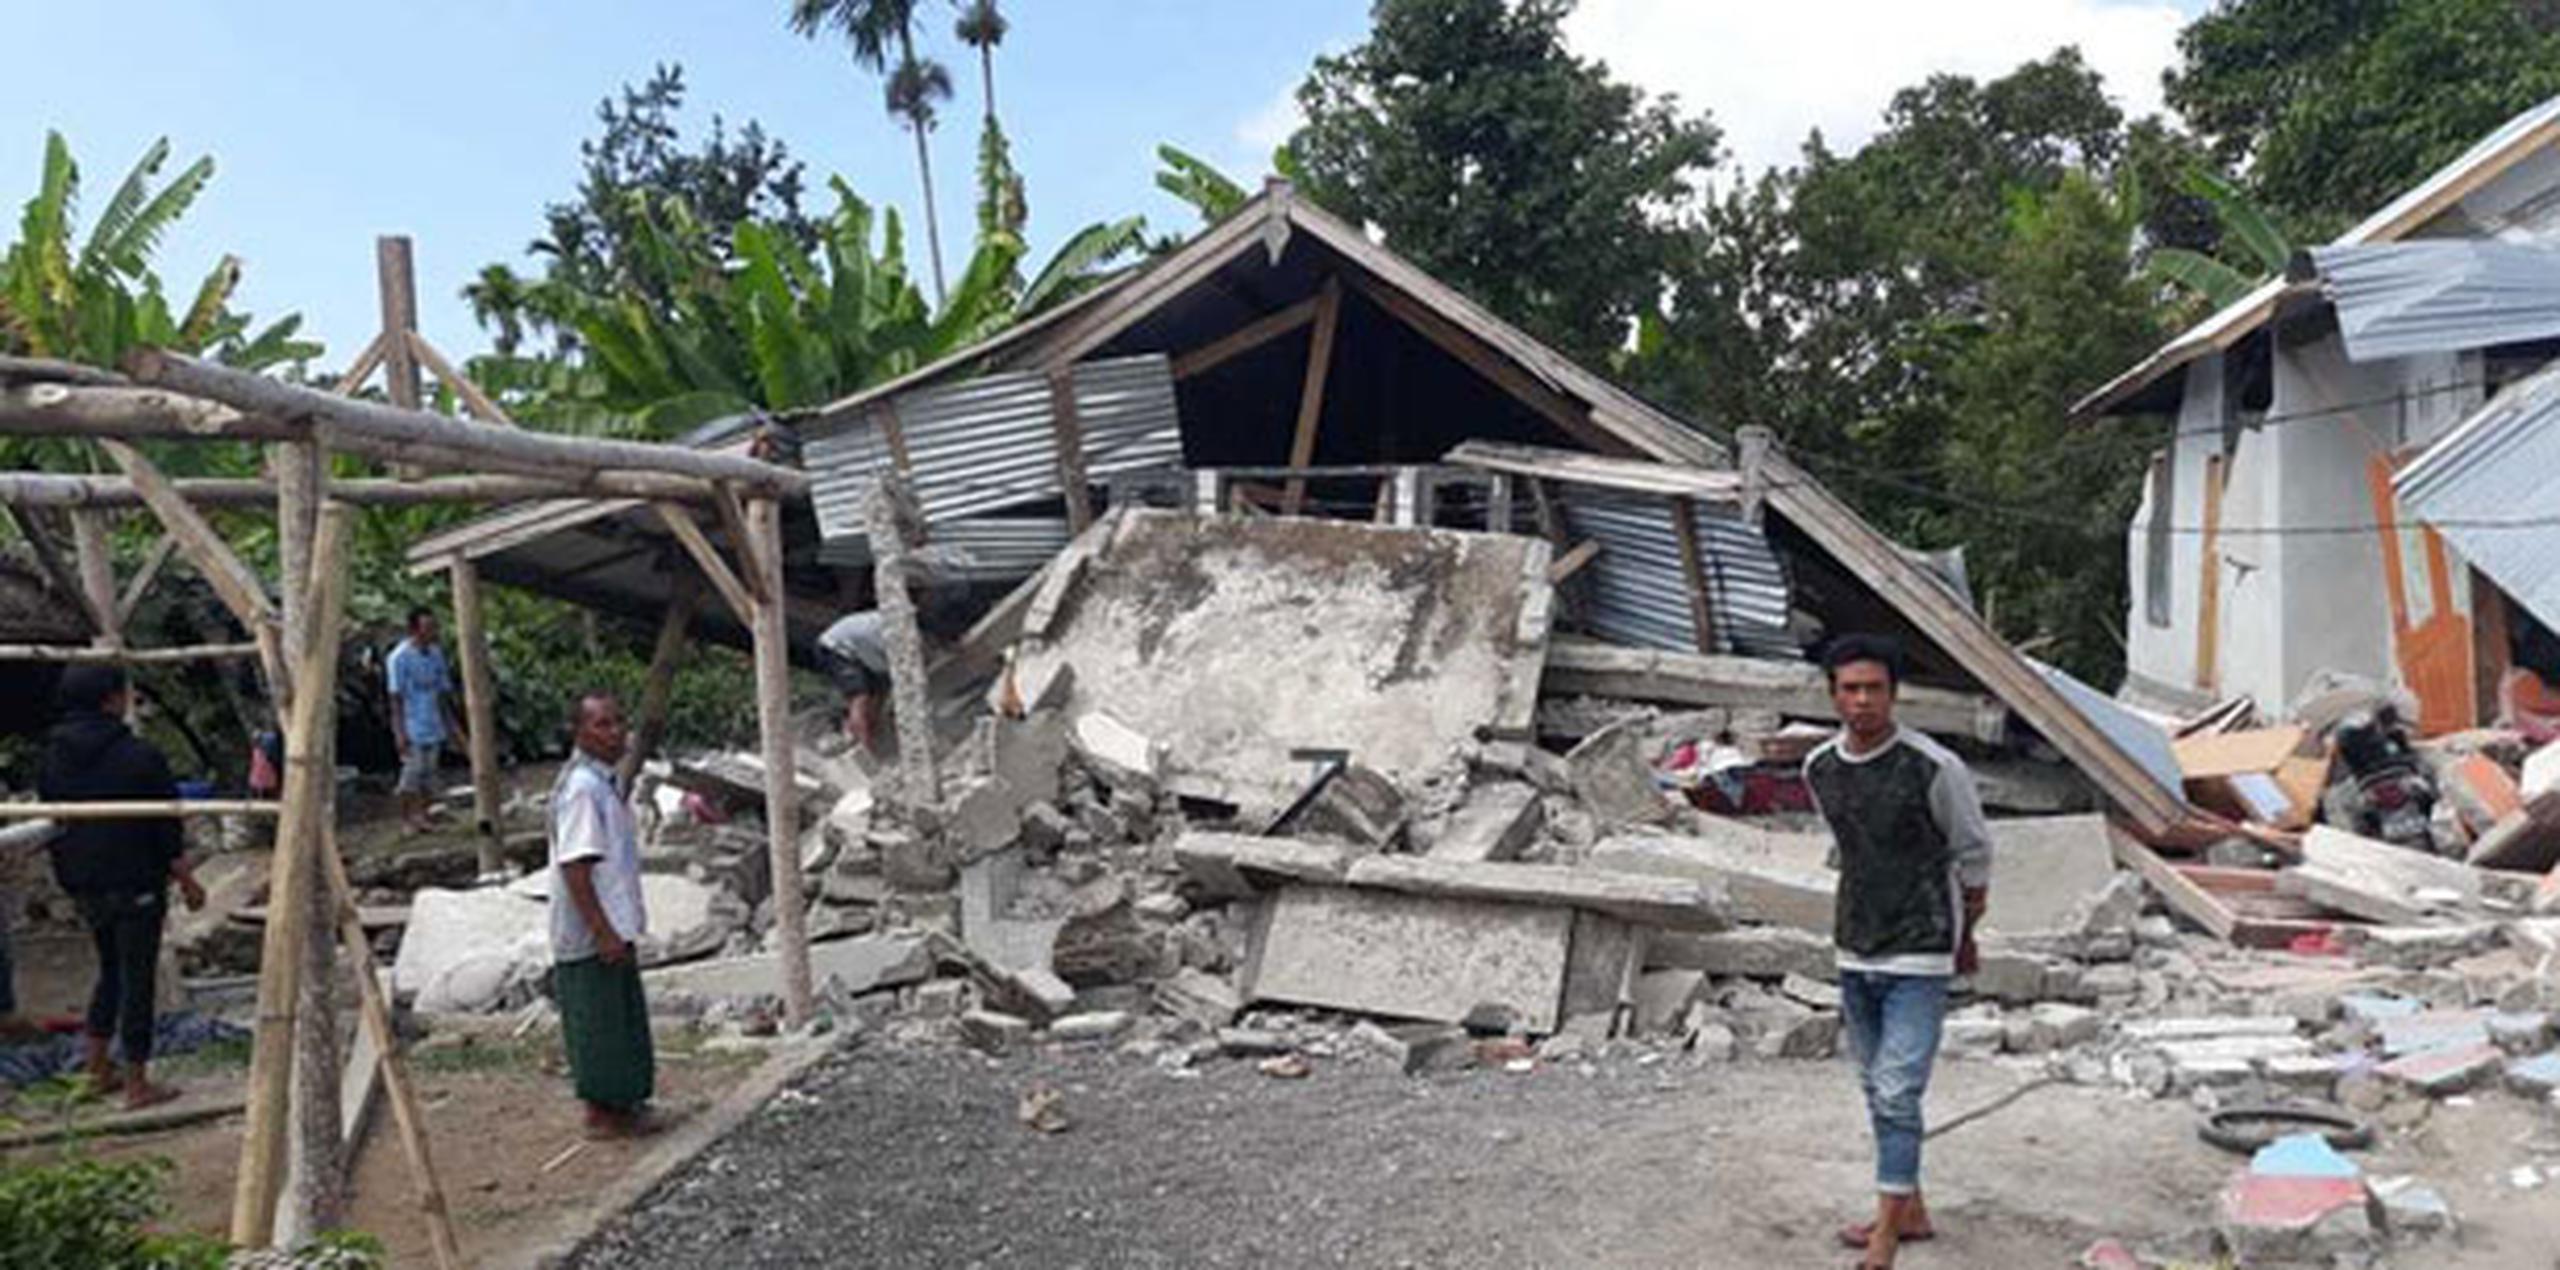 El terremoto dañó más de 1,000 viviendas y se sintió en toda la zona, incluyendo Bali, donde no se reportaron daños materiales ni humanos.  (AP)